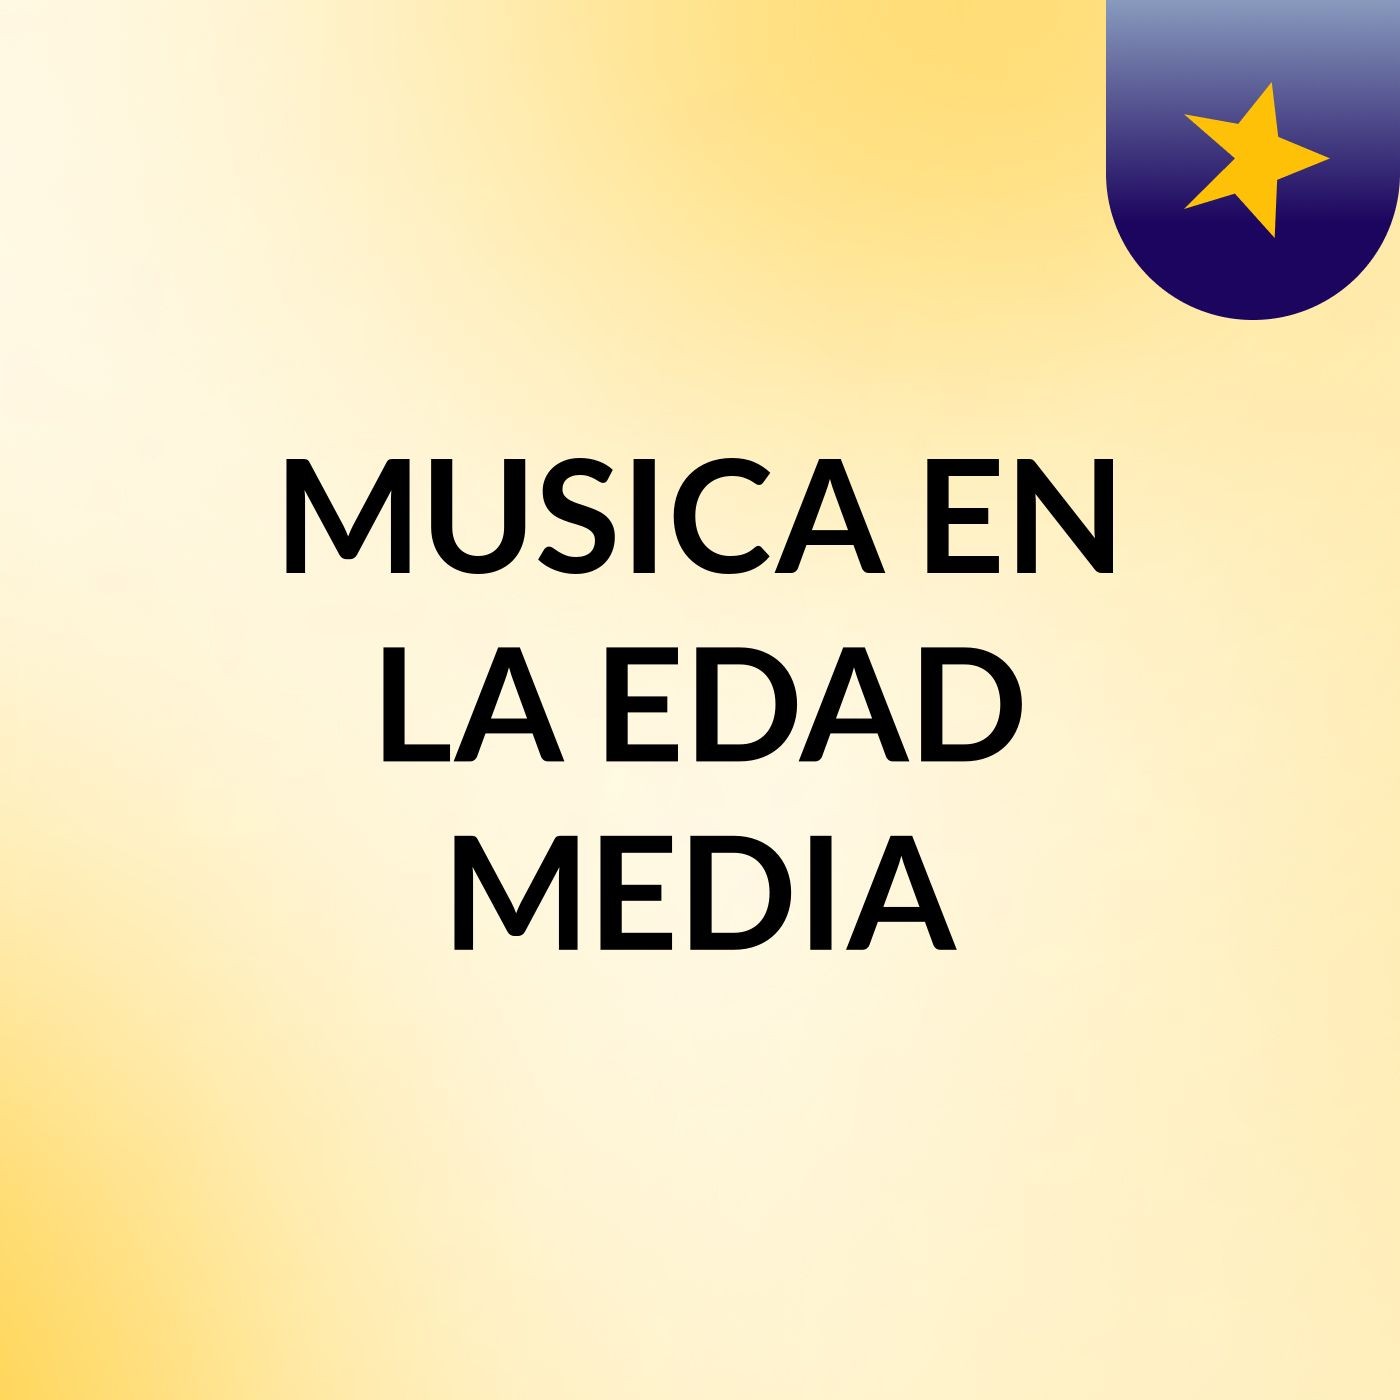 MUSICA EN LA EDAD MEDIA